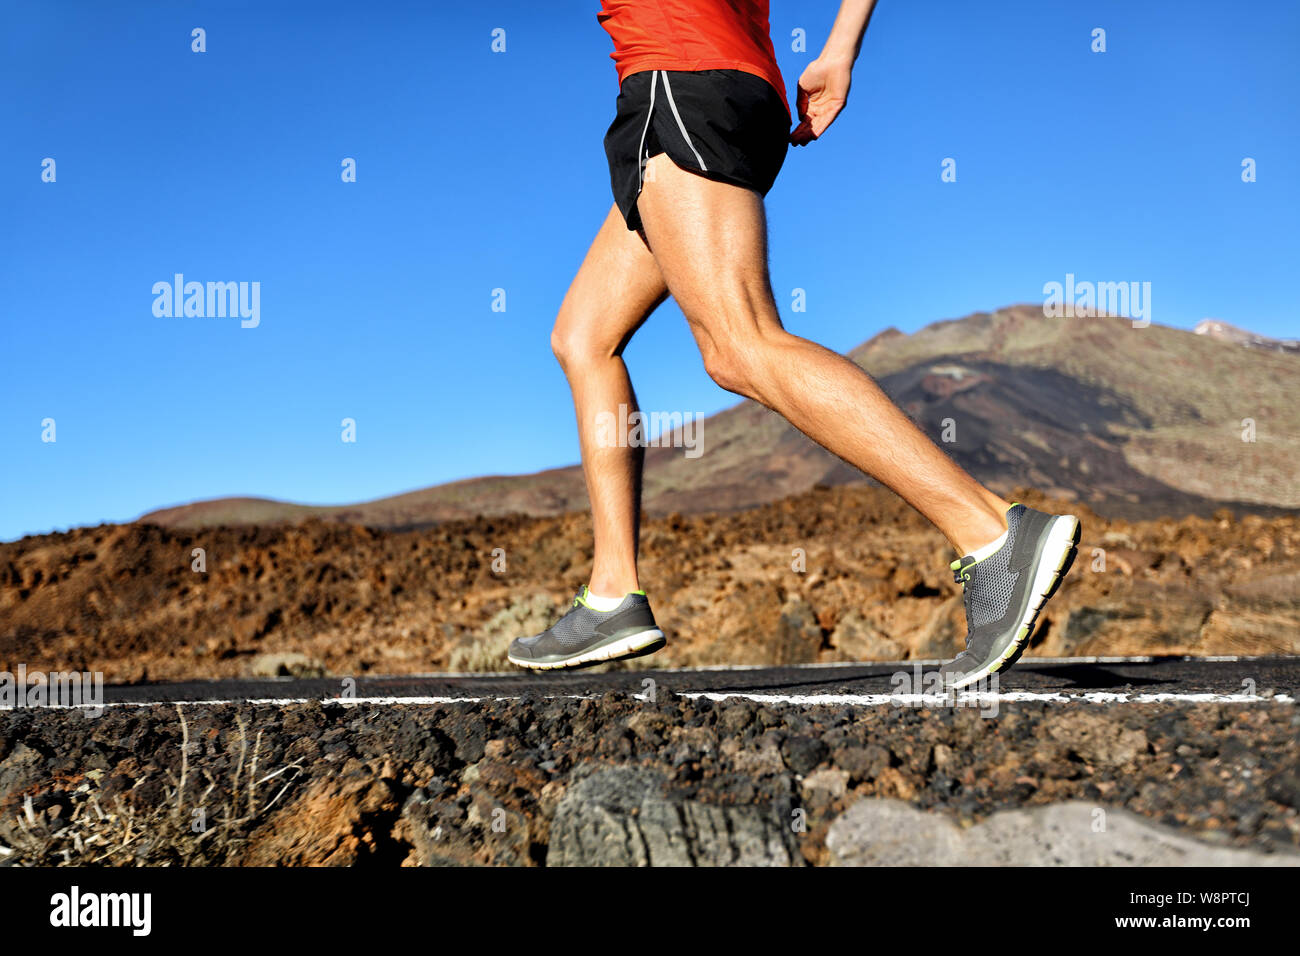 Esecuzione di atleta uomo runner jogging sulla strada della natura nella foresta montana. Metà inferiore del corpo scarpe da corsa e le gambe del maschio adulto su un jog in estate. Foto Stock